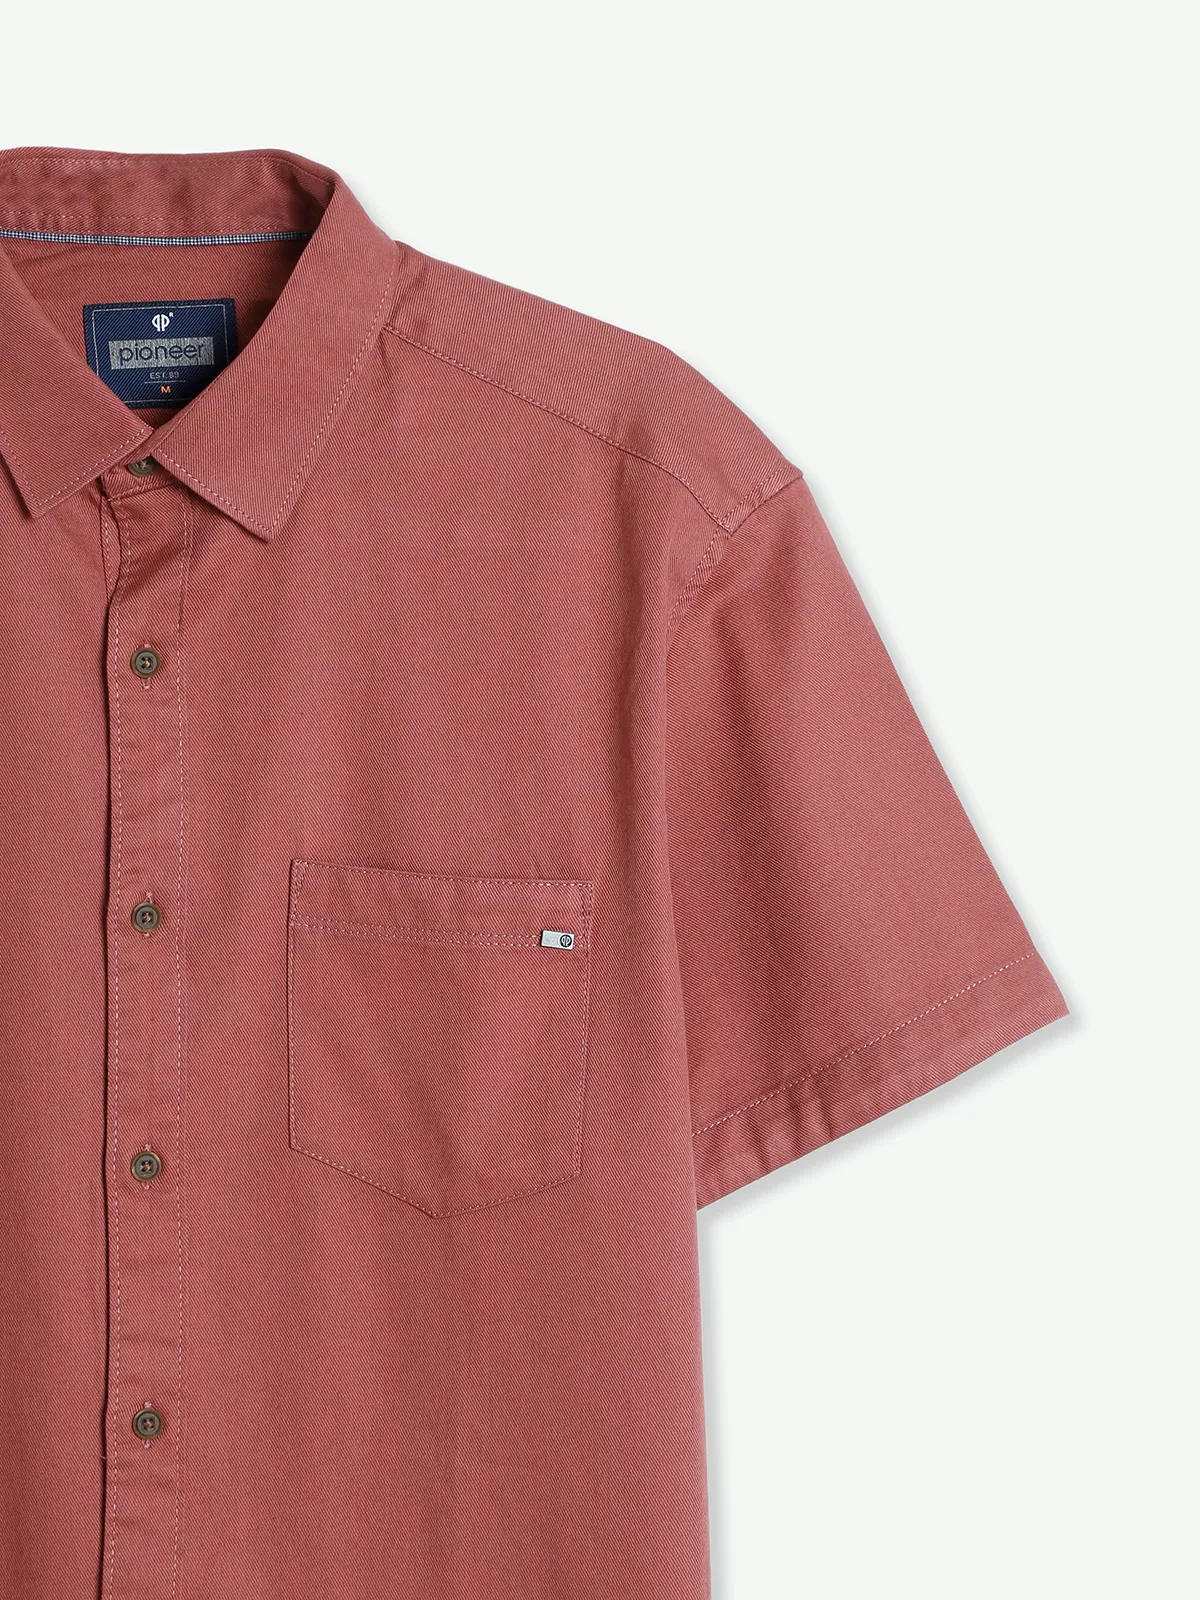 Pioneer plain dark pink cotton shirt